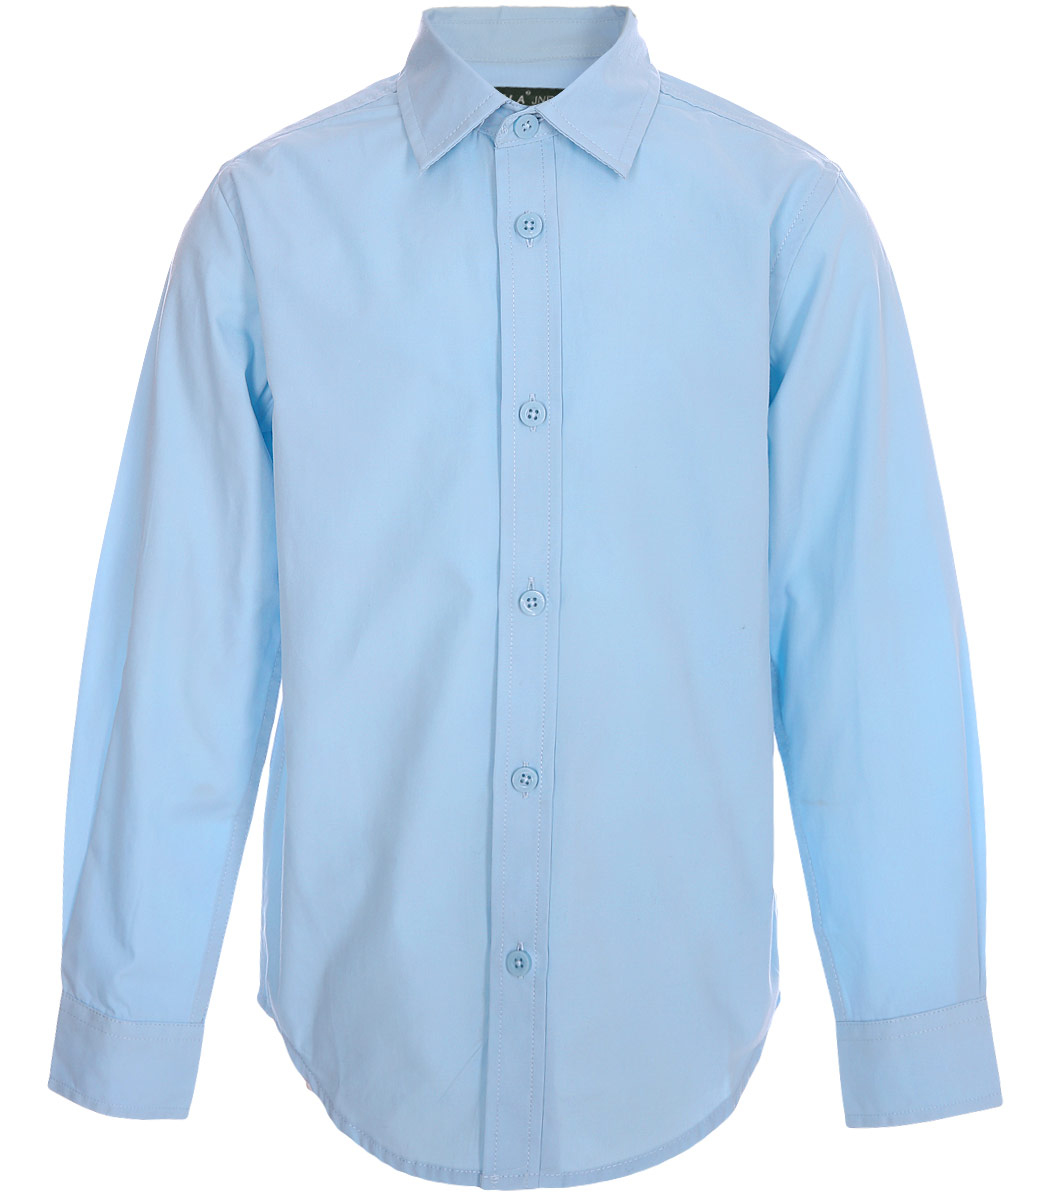 Рубашка для мальчика Sela, цвет: светло-голубой. H-812/235-8310. Размер 158